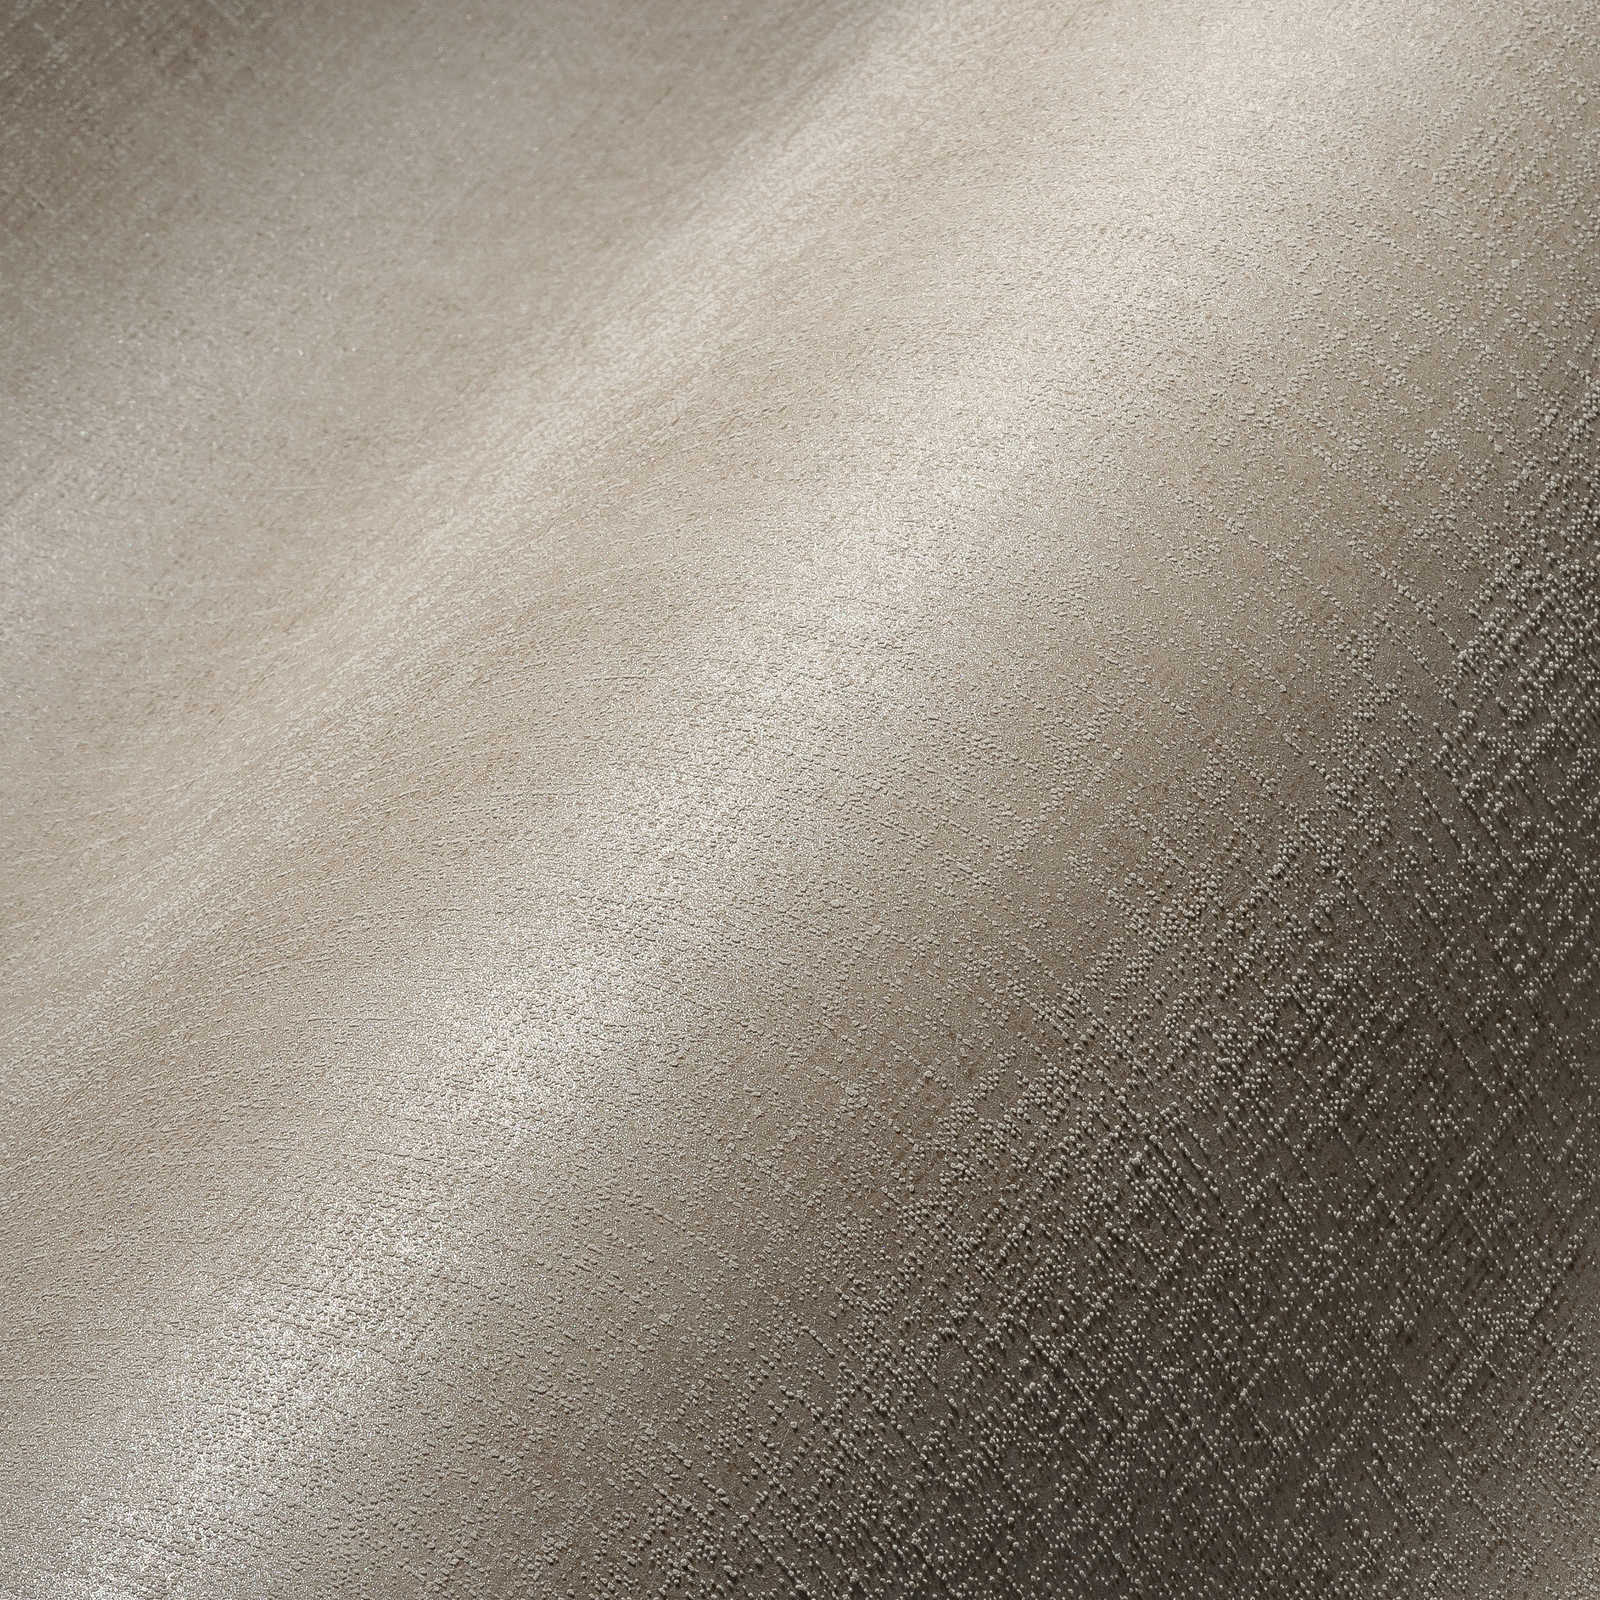             Papel pintado no tejido de color gris claro con acabado brillante y patrón texturizado - Gris
        